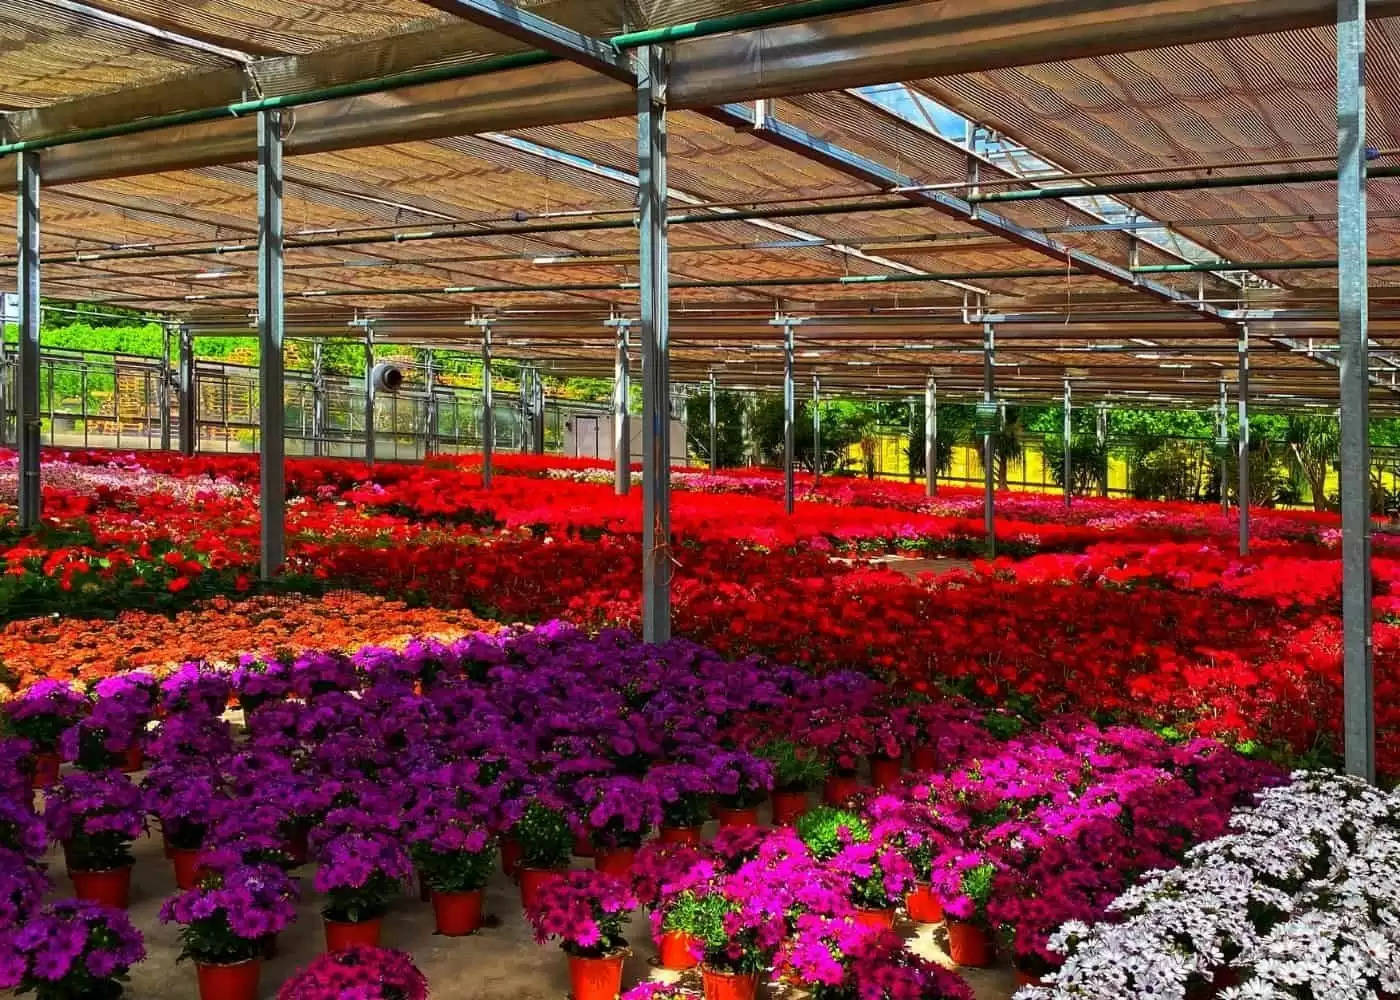 Plant Nursery: पौधों की नर्सरी लगाकर कमायें लाखों रूपये महीना, जानें तरीका